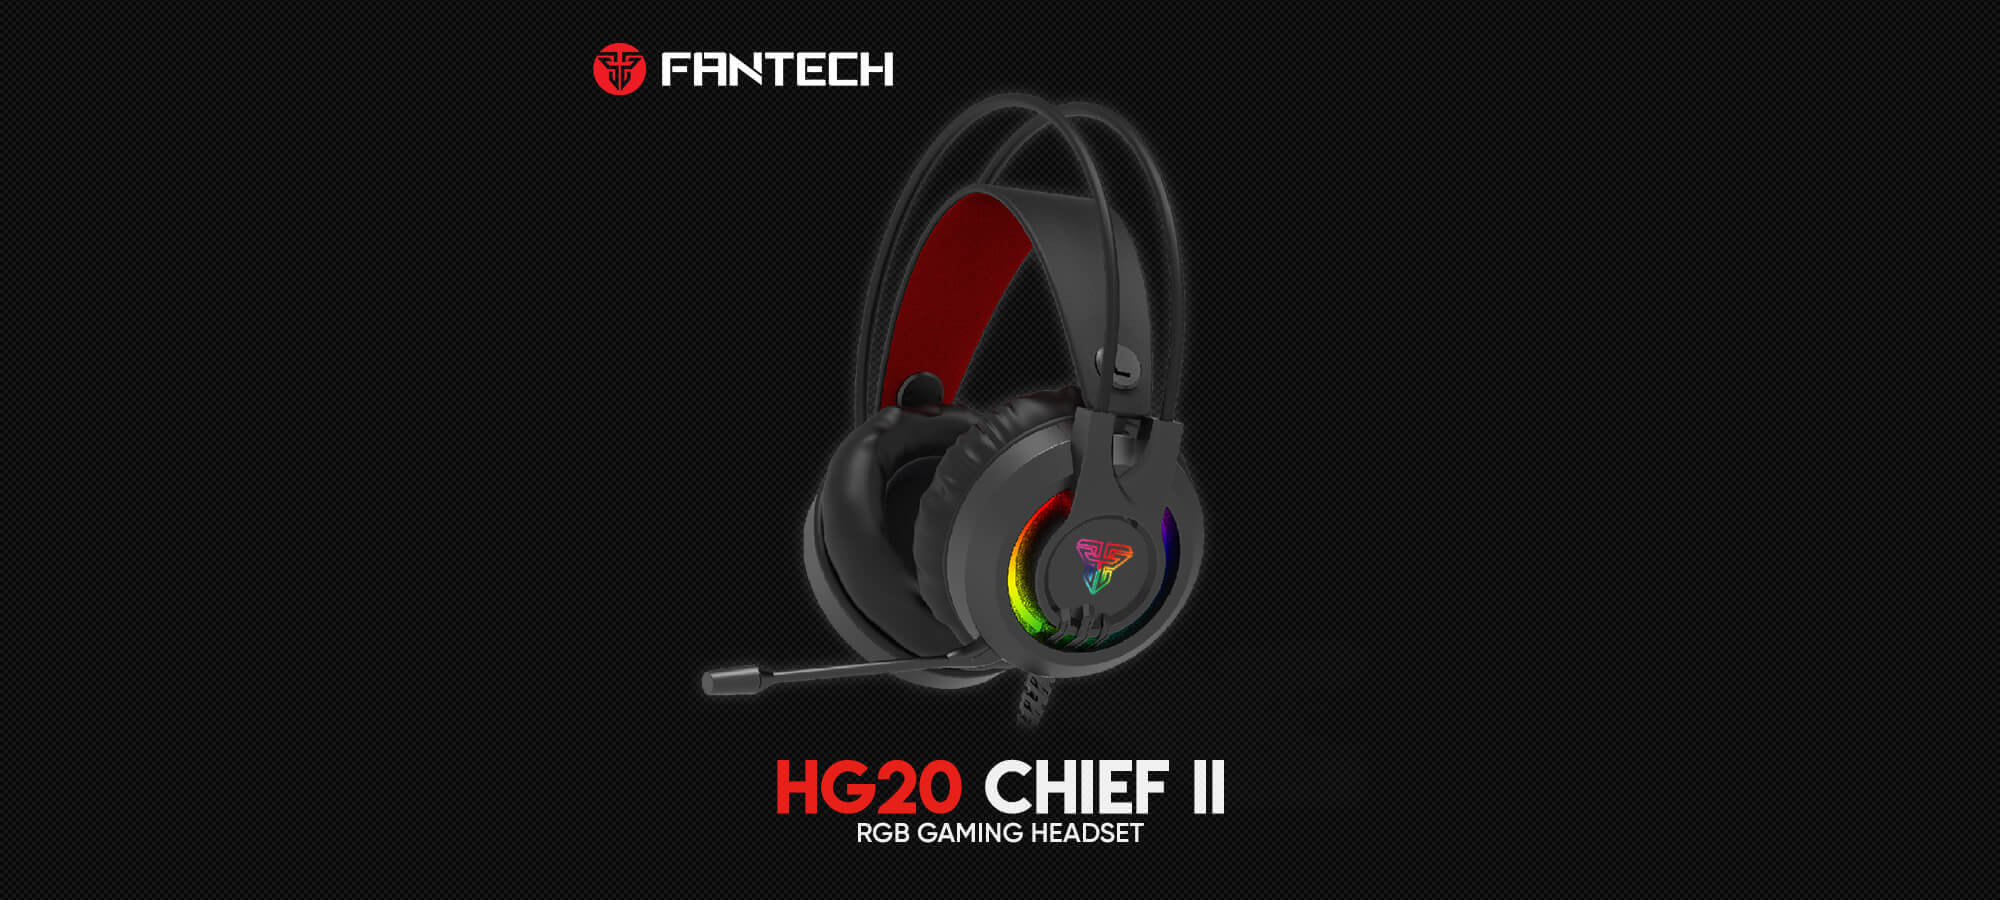 Игровая гарнитура Fantech Chief II HG20